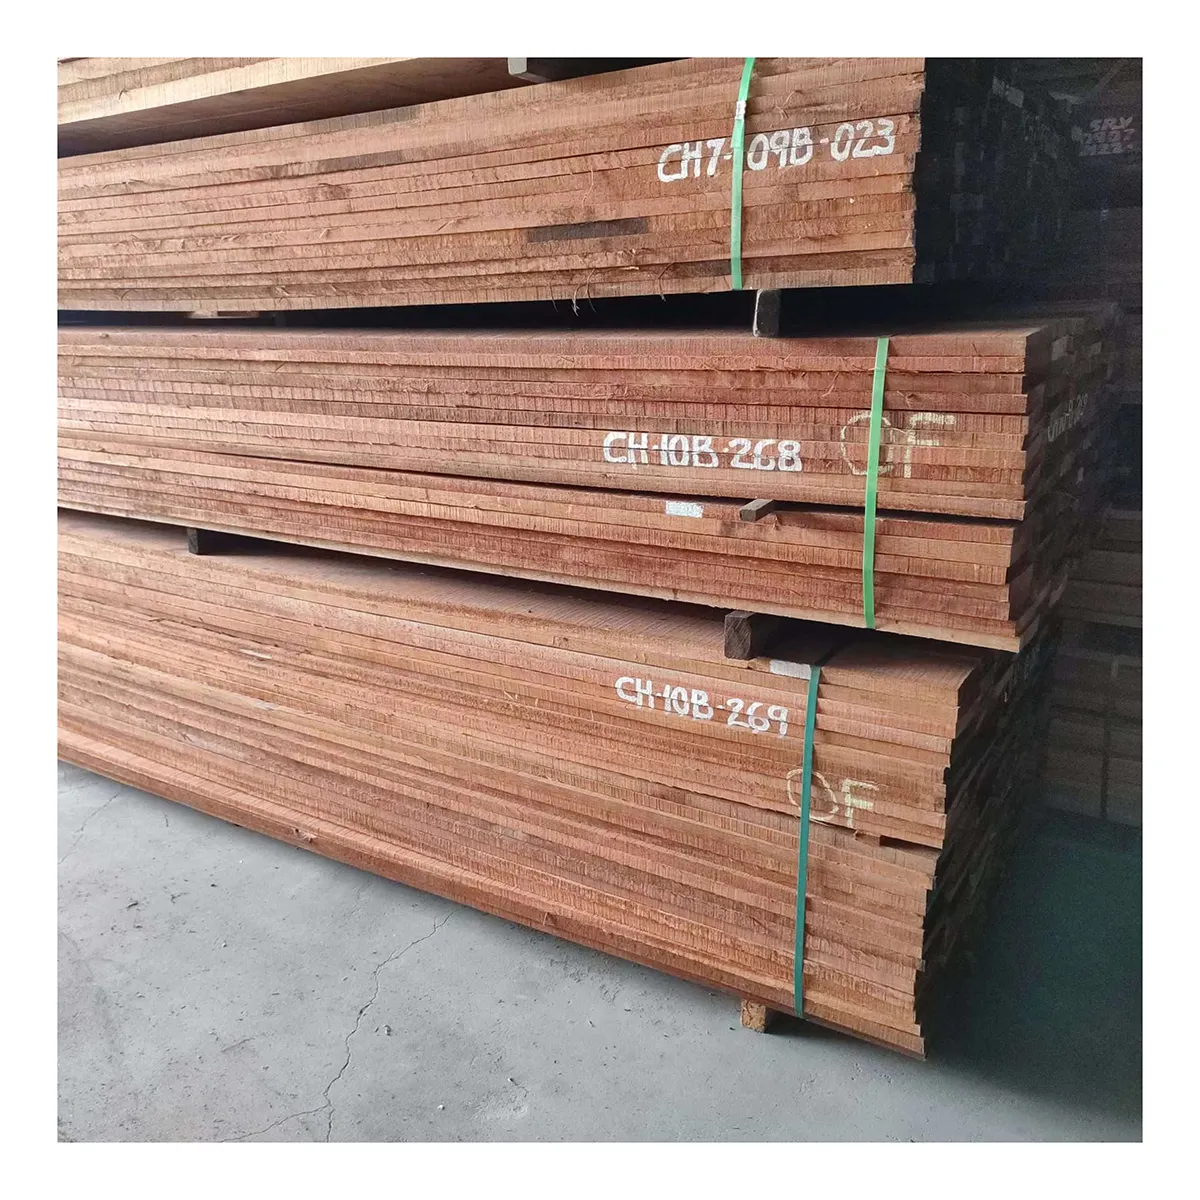 Nueva llegada de madera Meranti rojo oscuro con calidad impecable a medida para aplicaciones de moldeo, especialmente en contextos de apartamentos